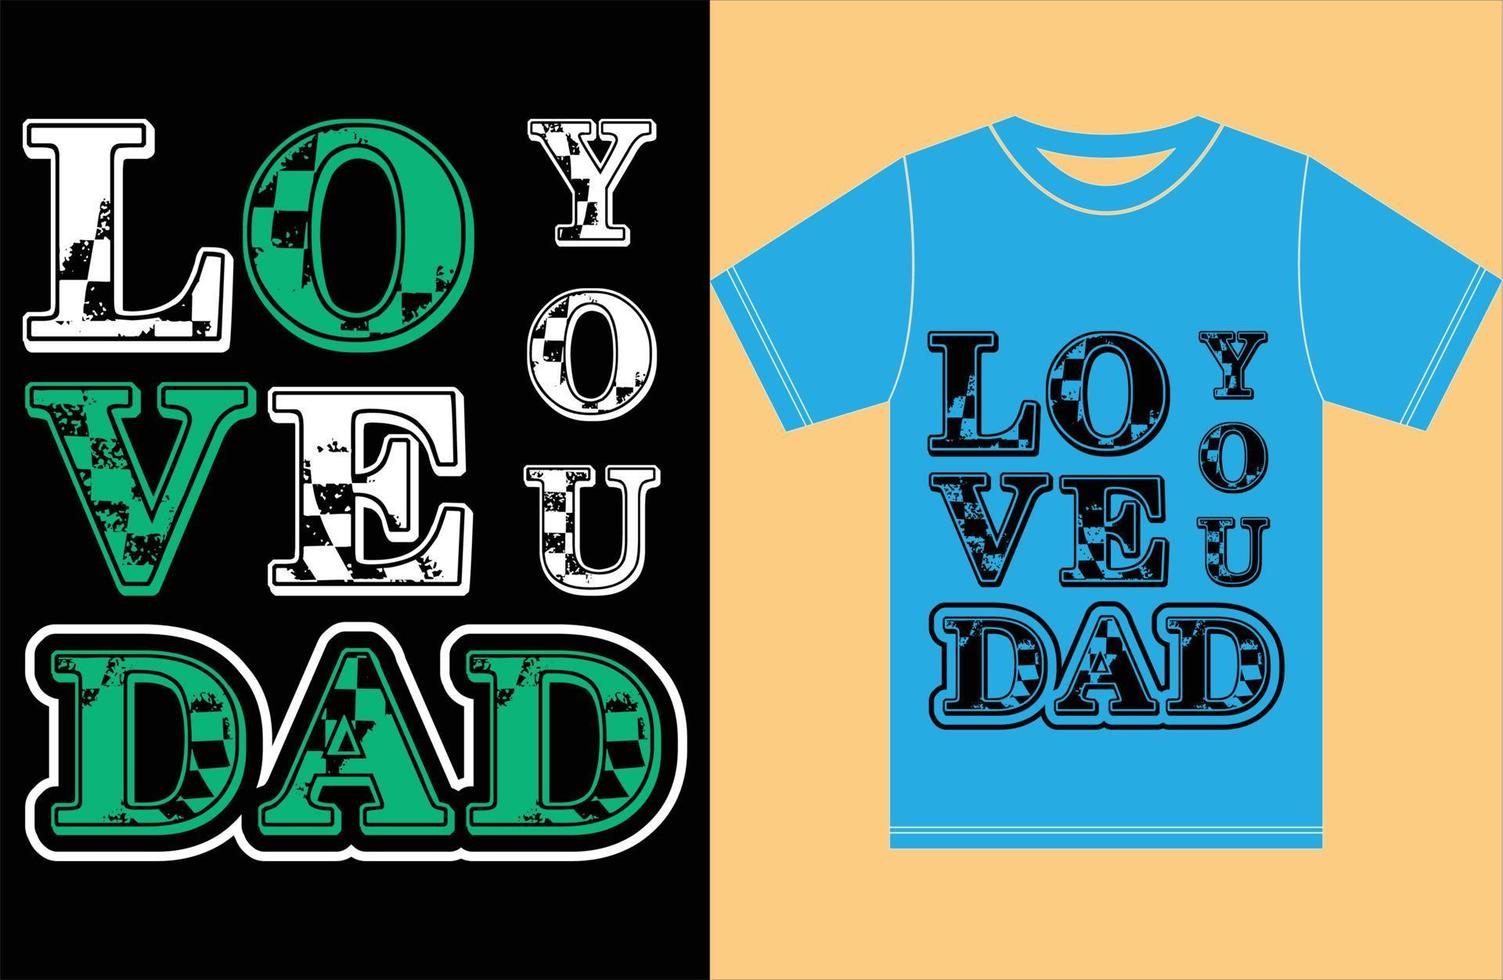 älskar dig pappa t-shirt. jag älskar dig pappa. fars t-shirt. vektor